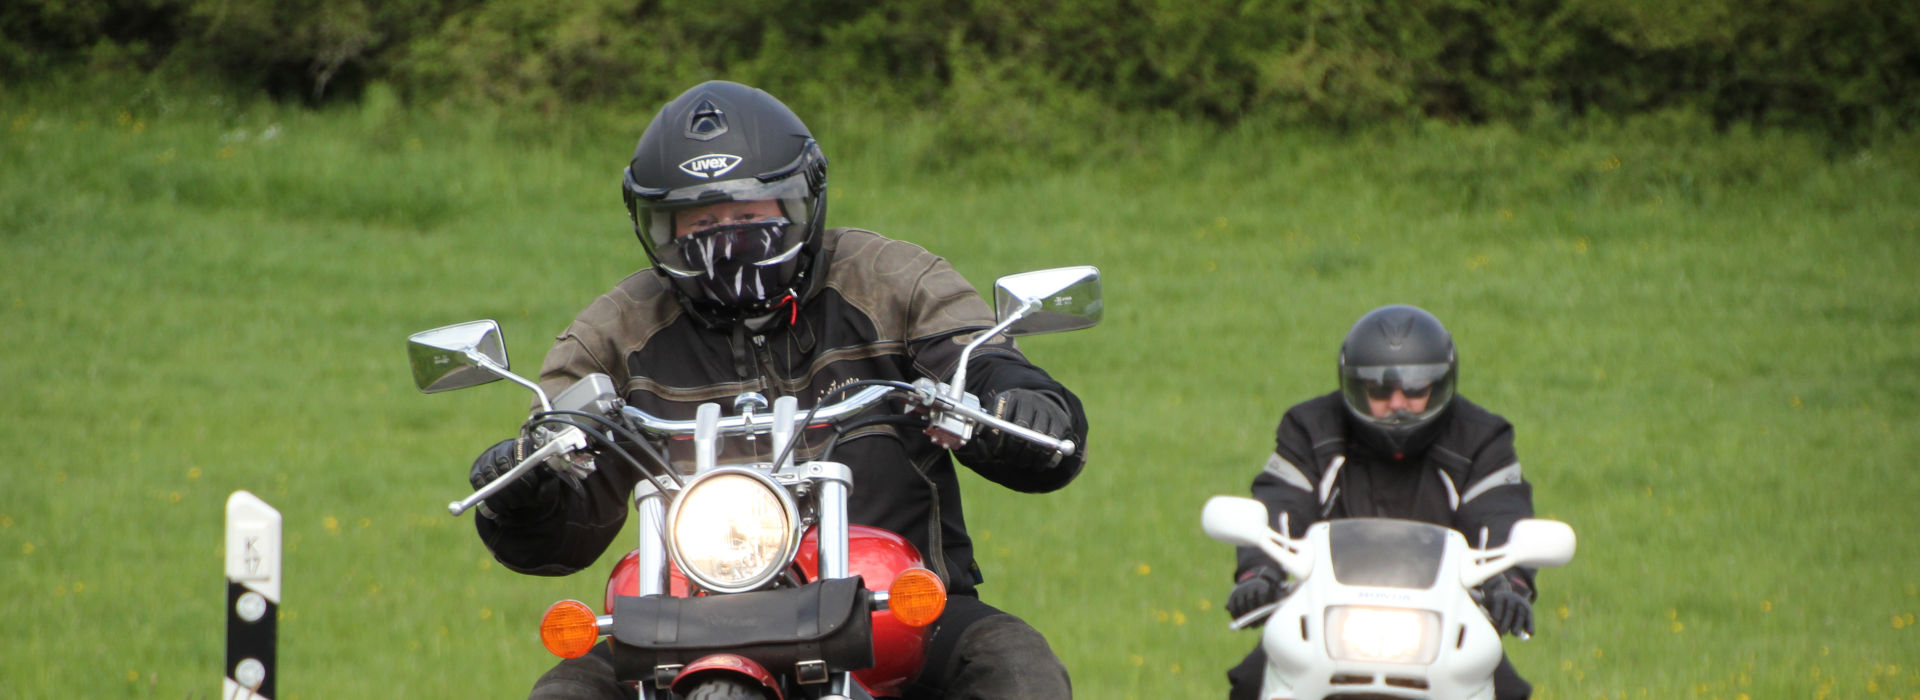 Motorrijschool Motorrijbewijspoint Heerde motorrijlessen